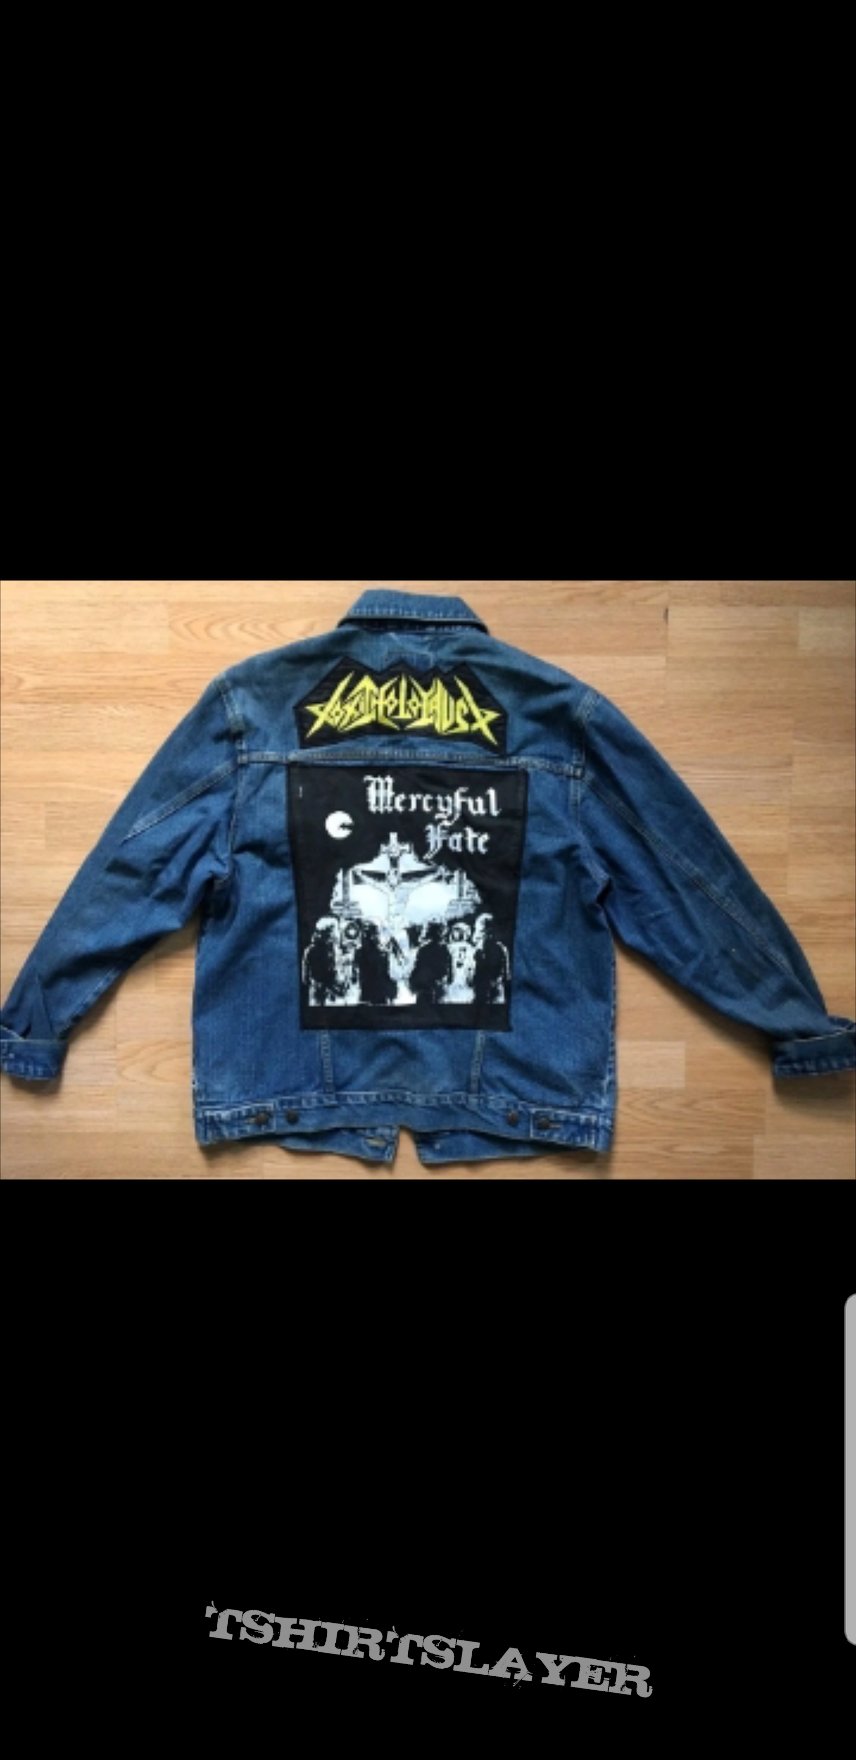 Acid Mercyful fate jean jacket